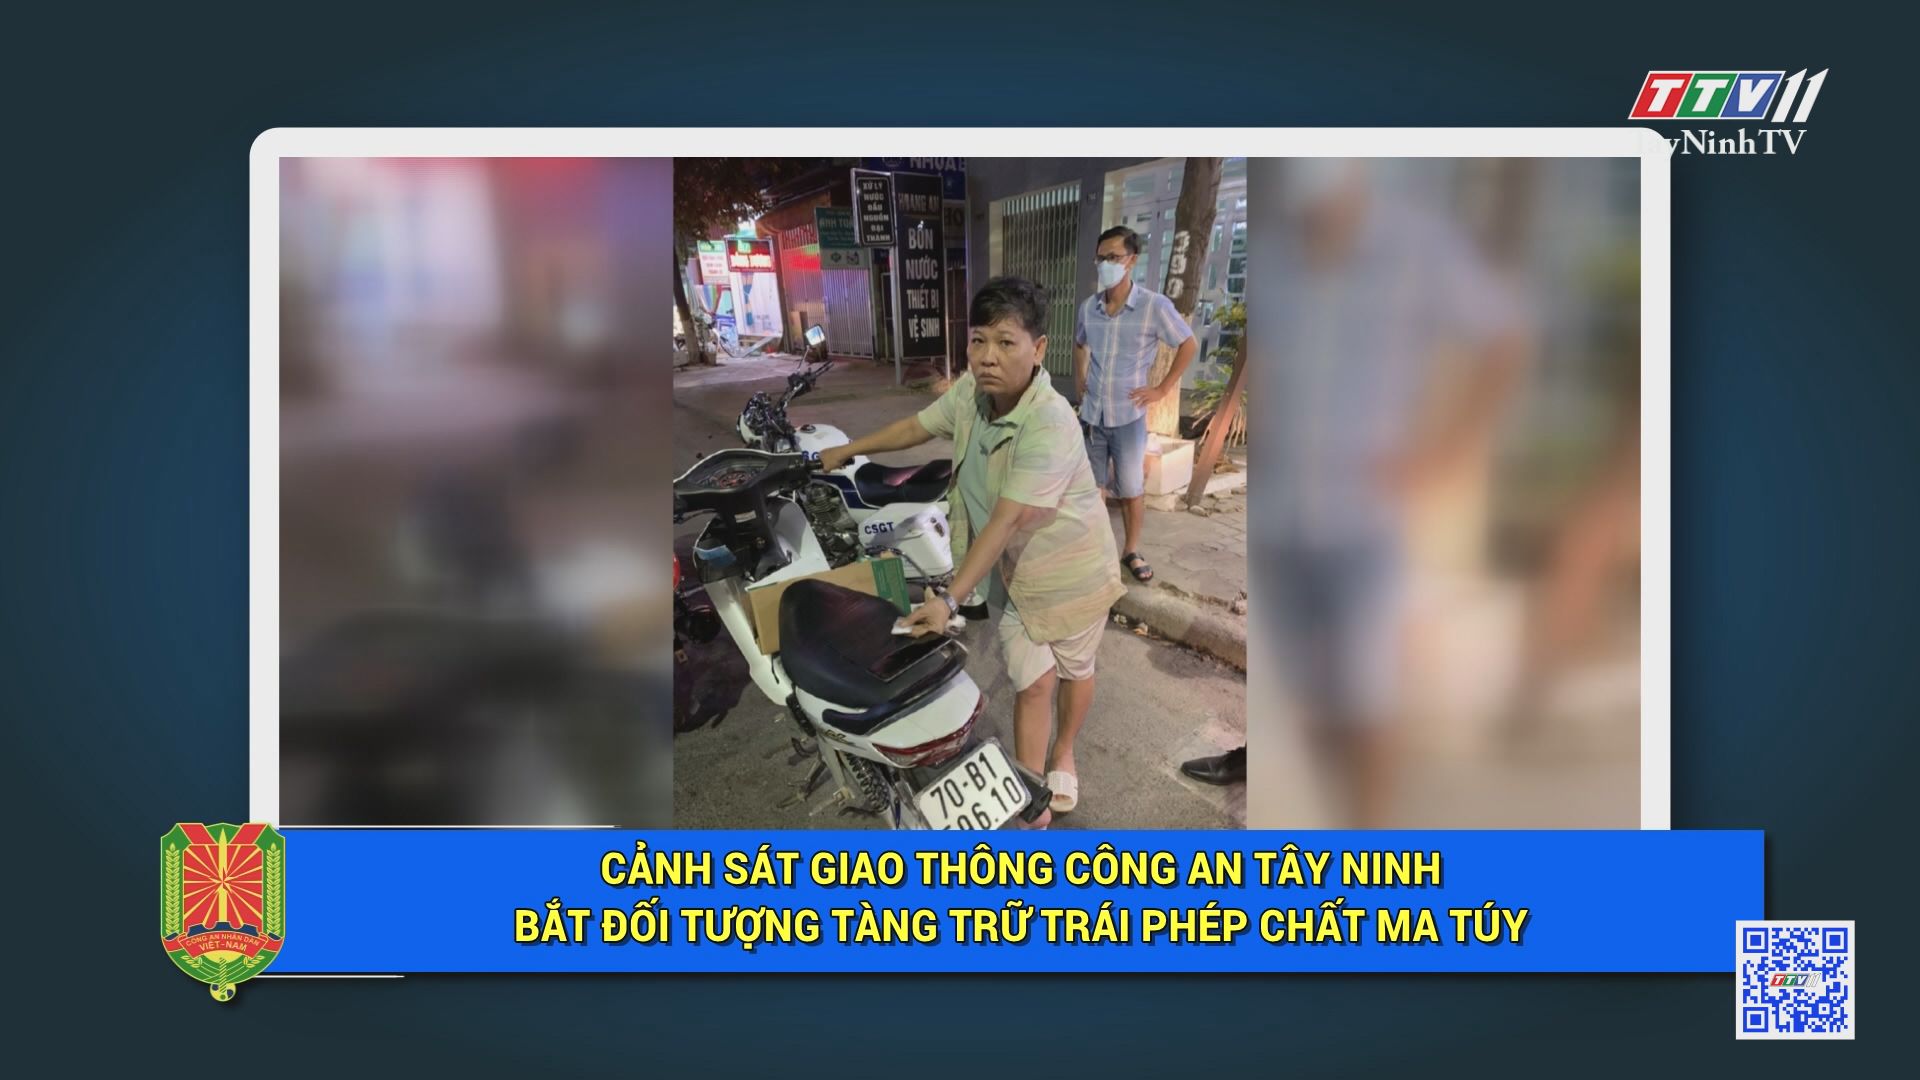 CSGT Công an Tây Ninh bắt đối tượng tàng trữ trái phép chất m.a tú.y | AN NINH TÂY NINH | TayNinhTV